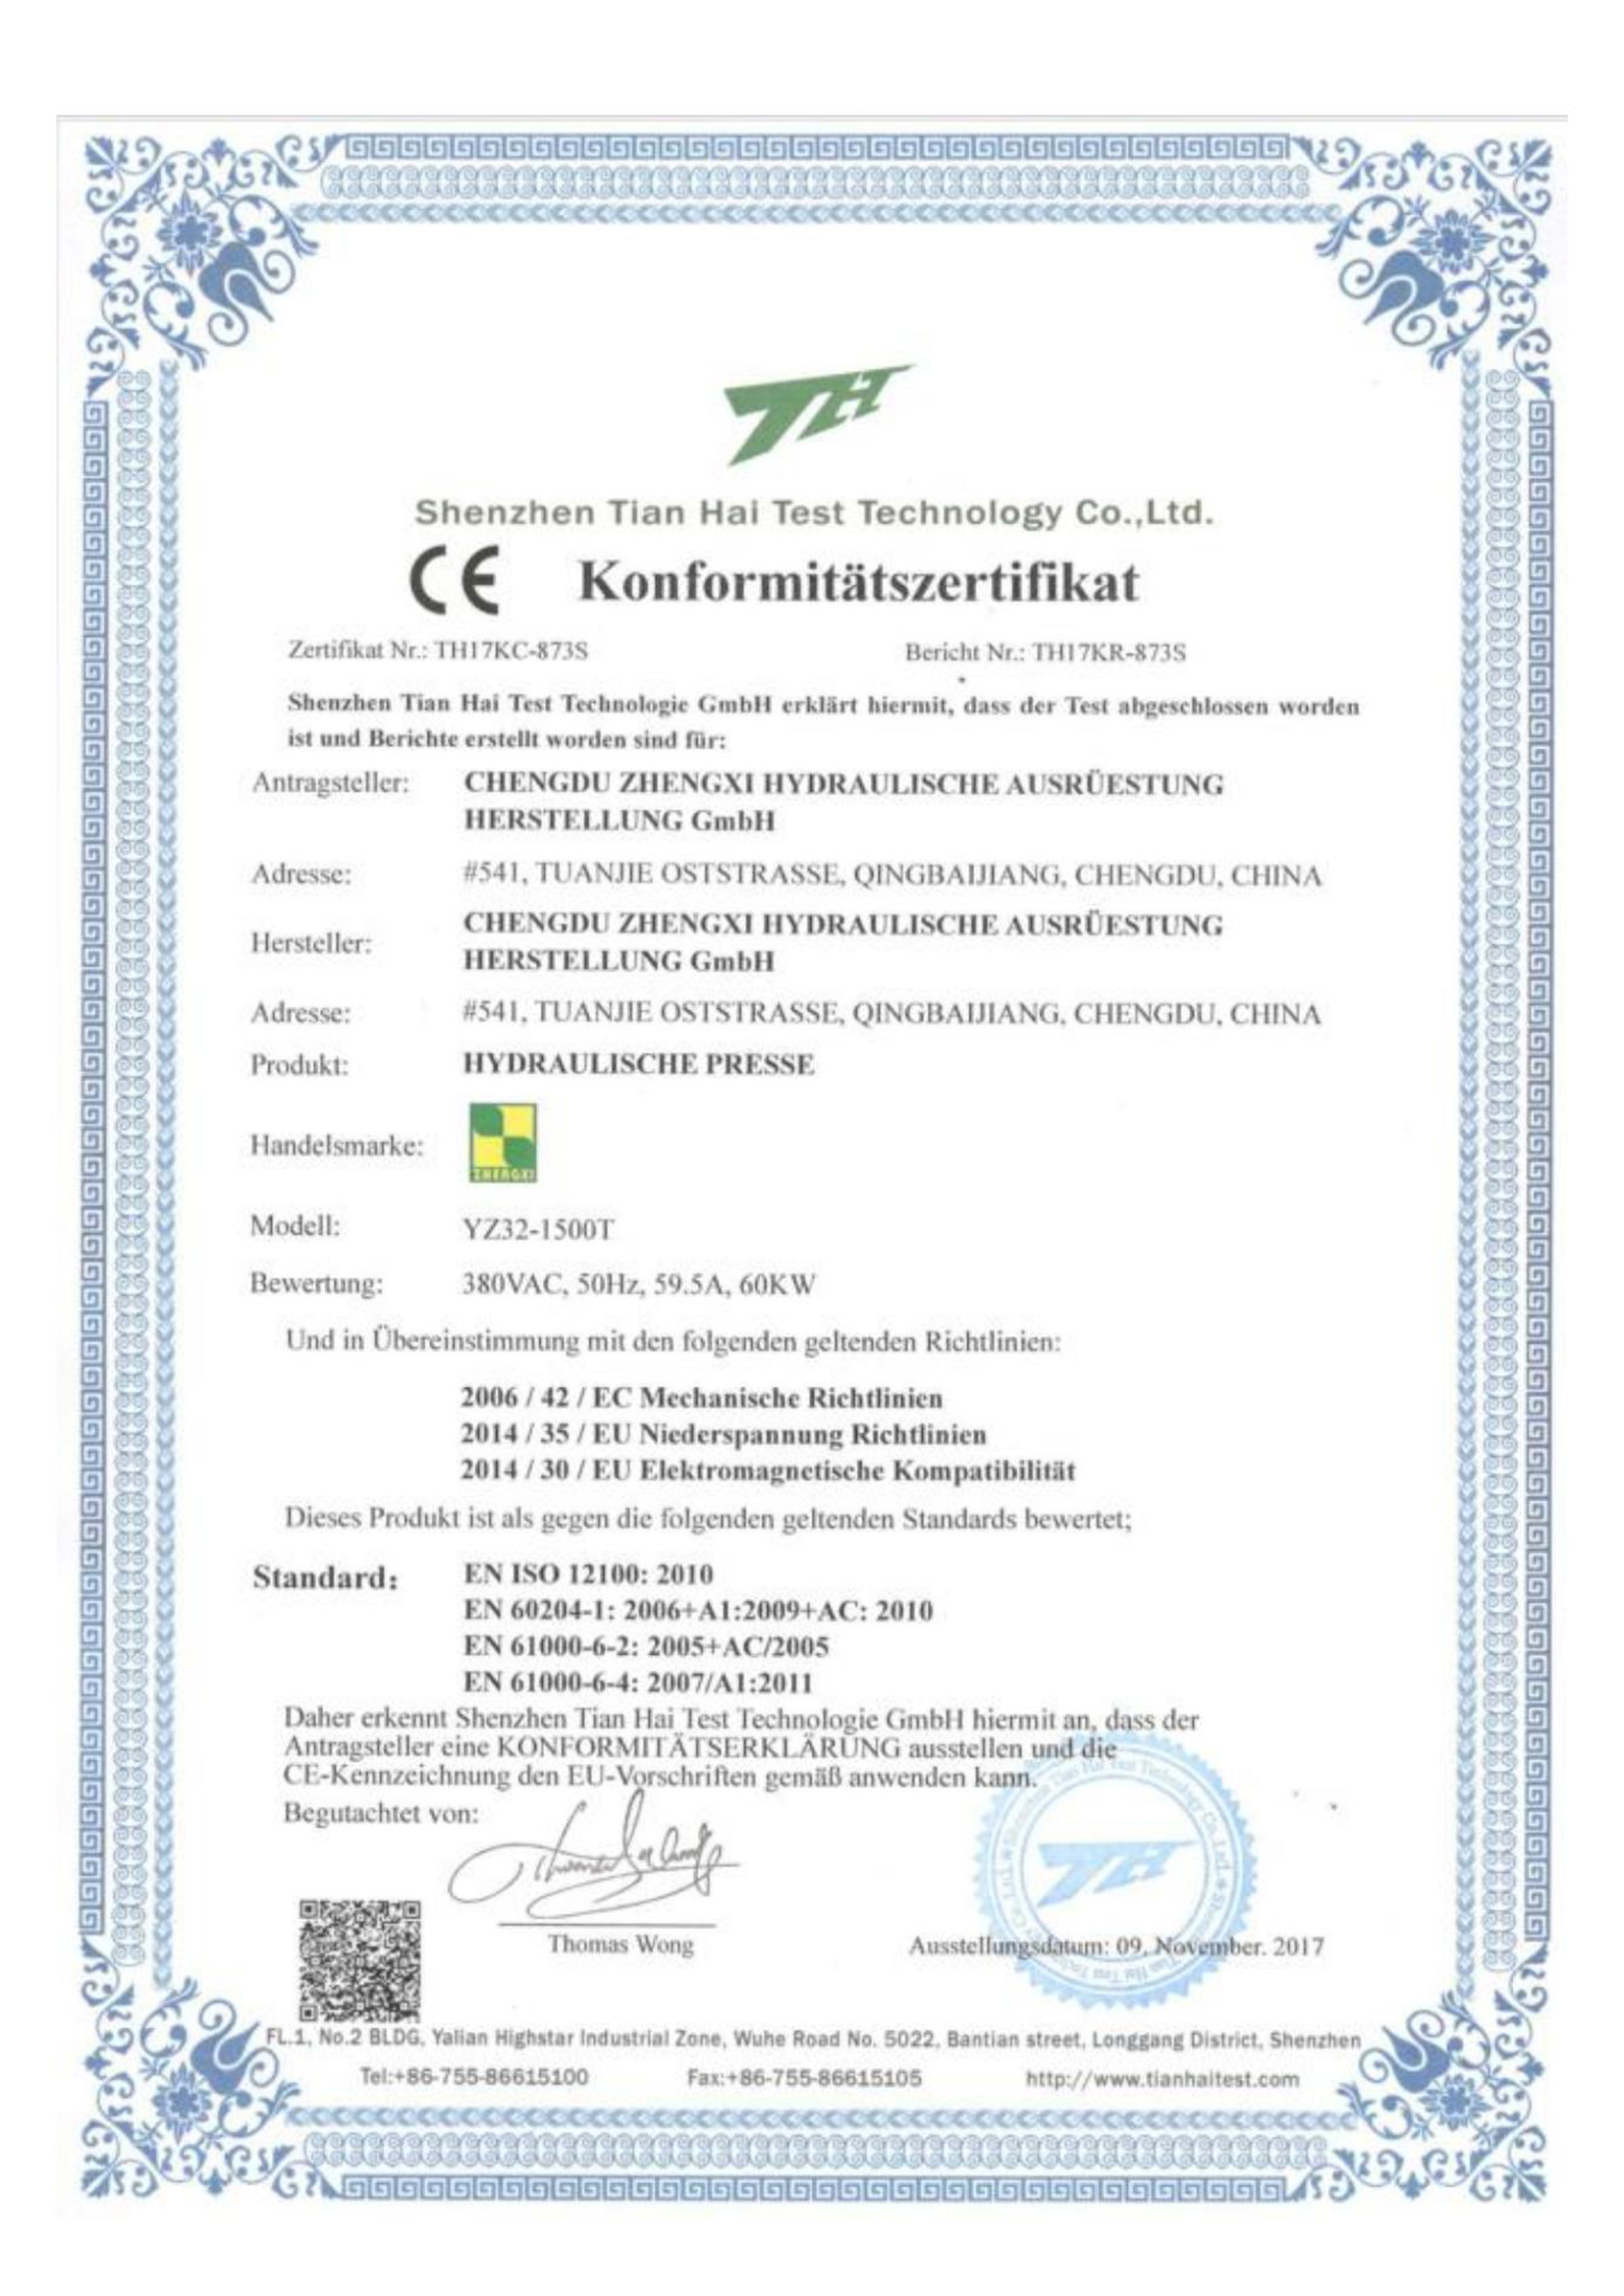 medzinárodný certifikát CE 2